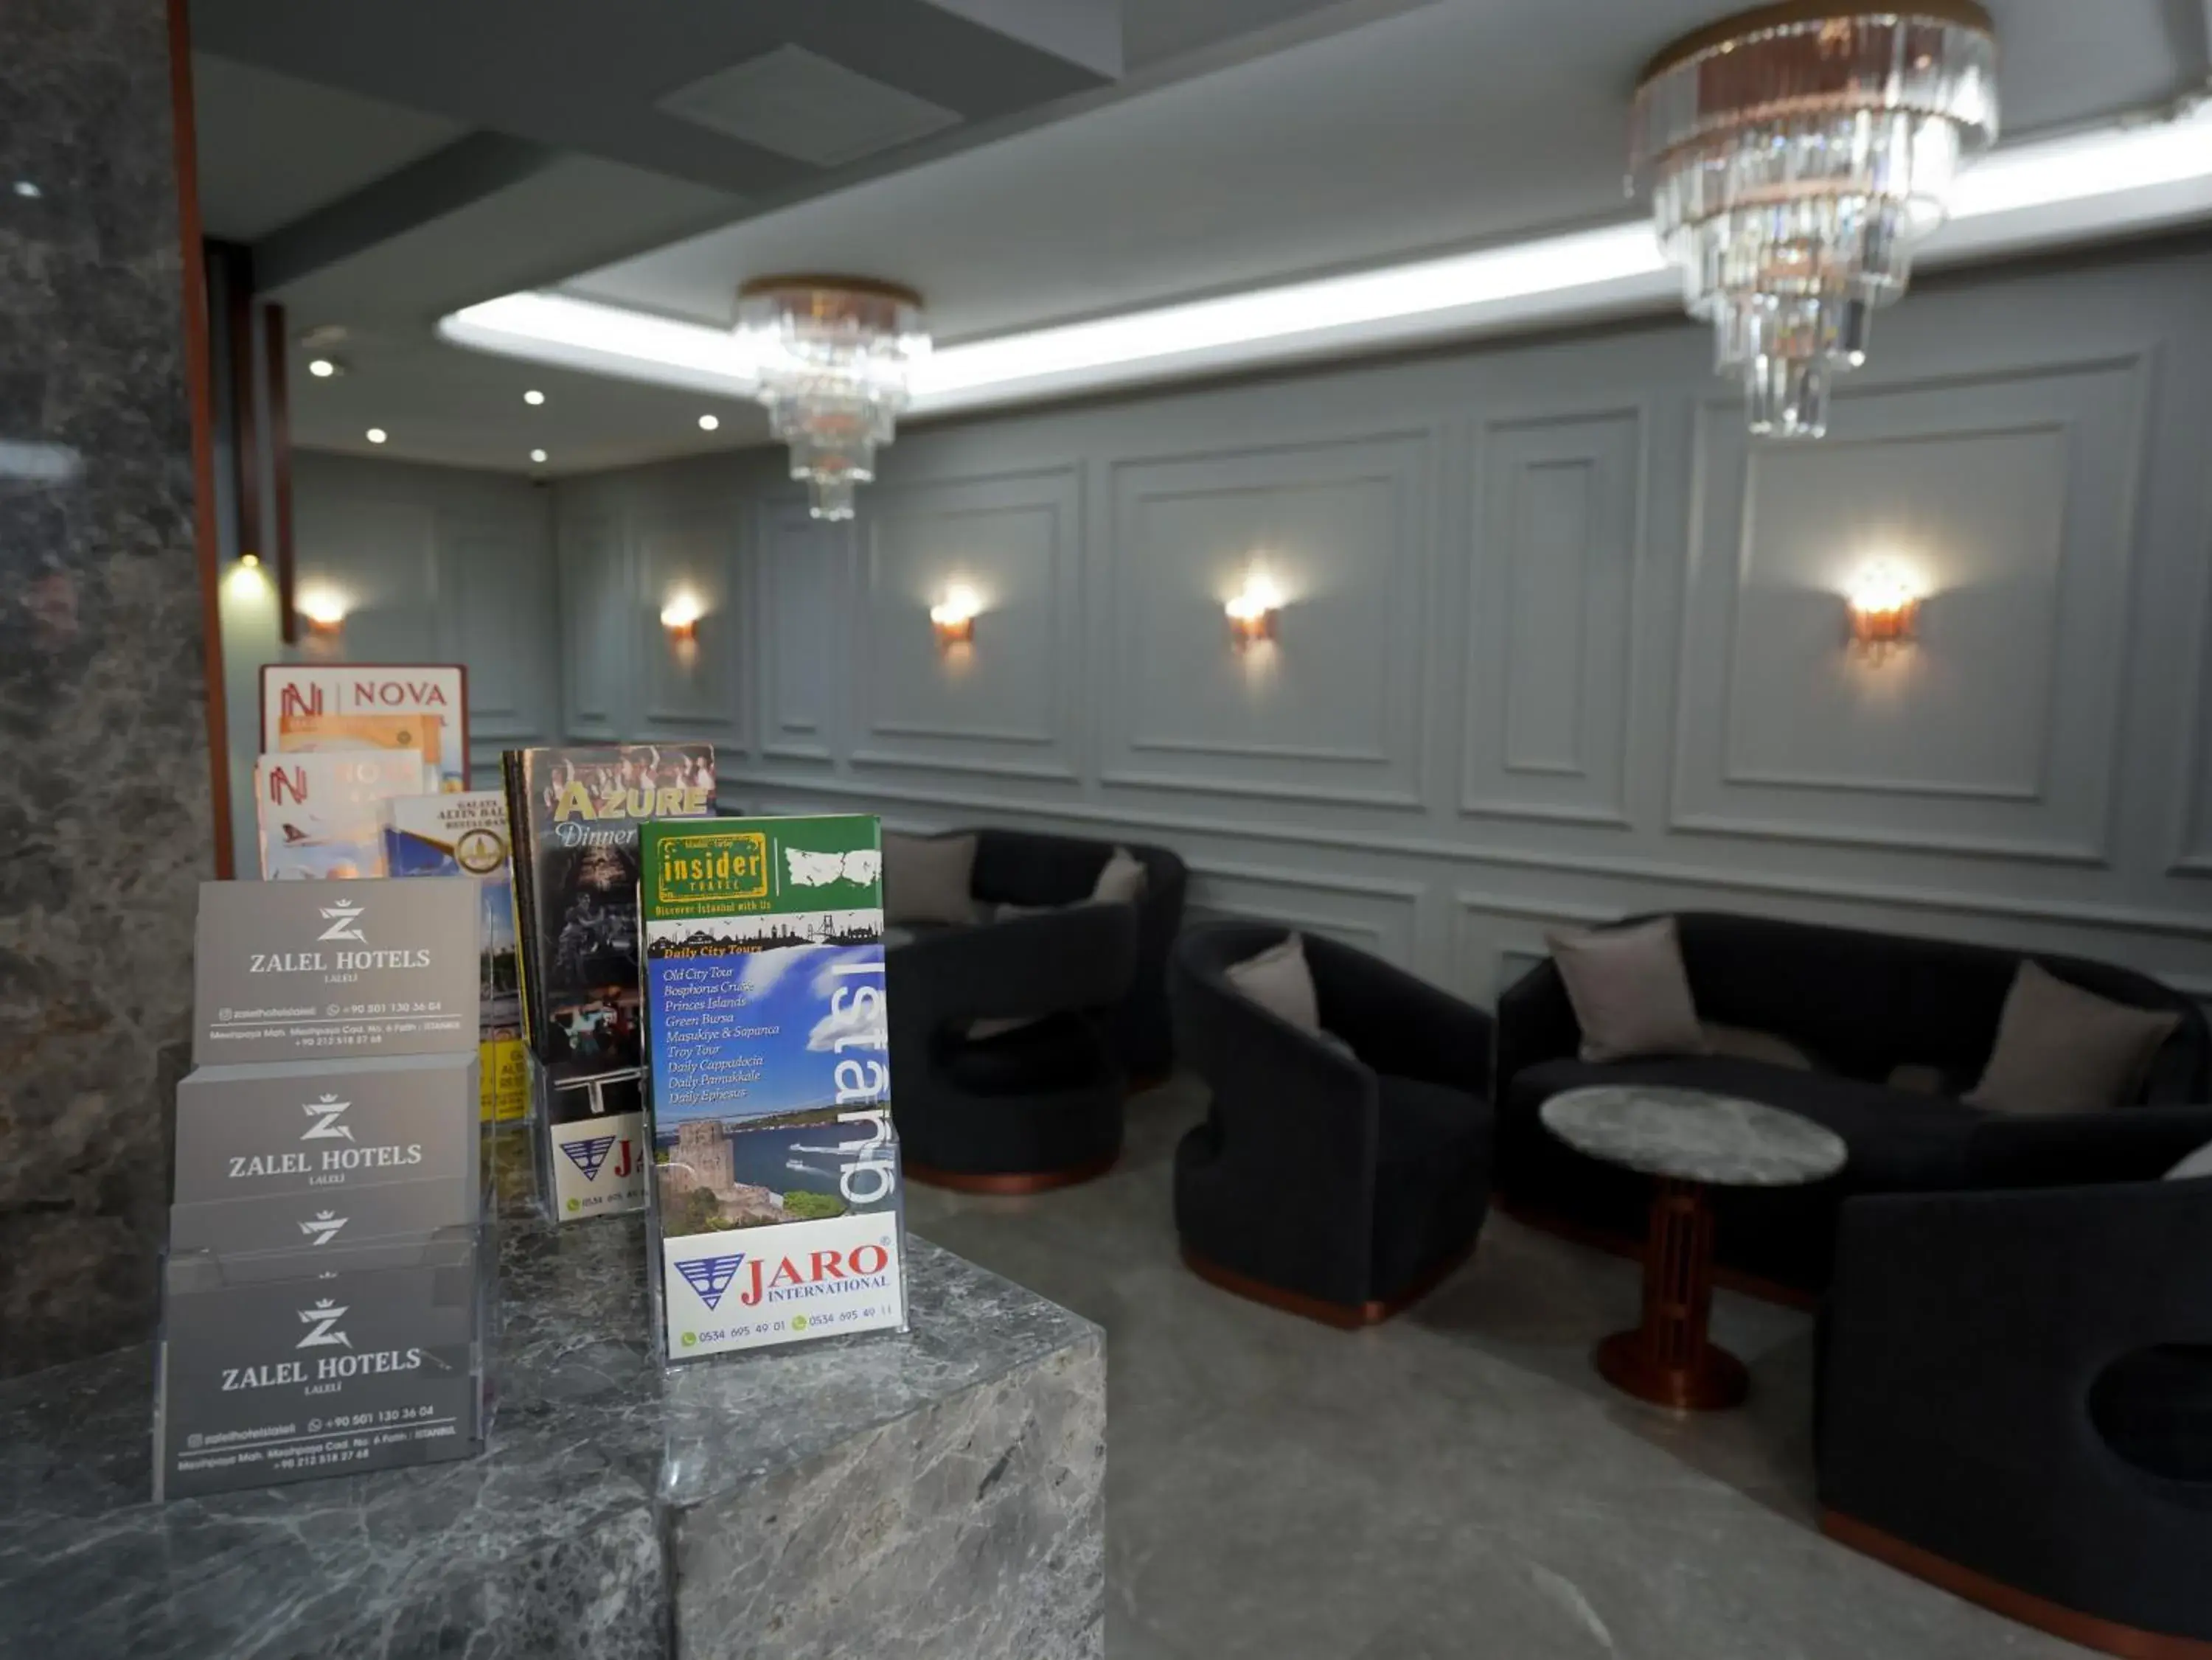 Lobby or reception in zalel hotels laleli